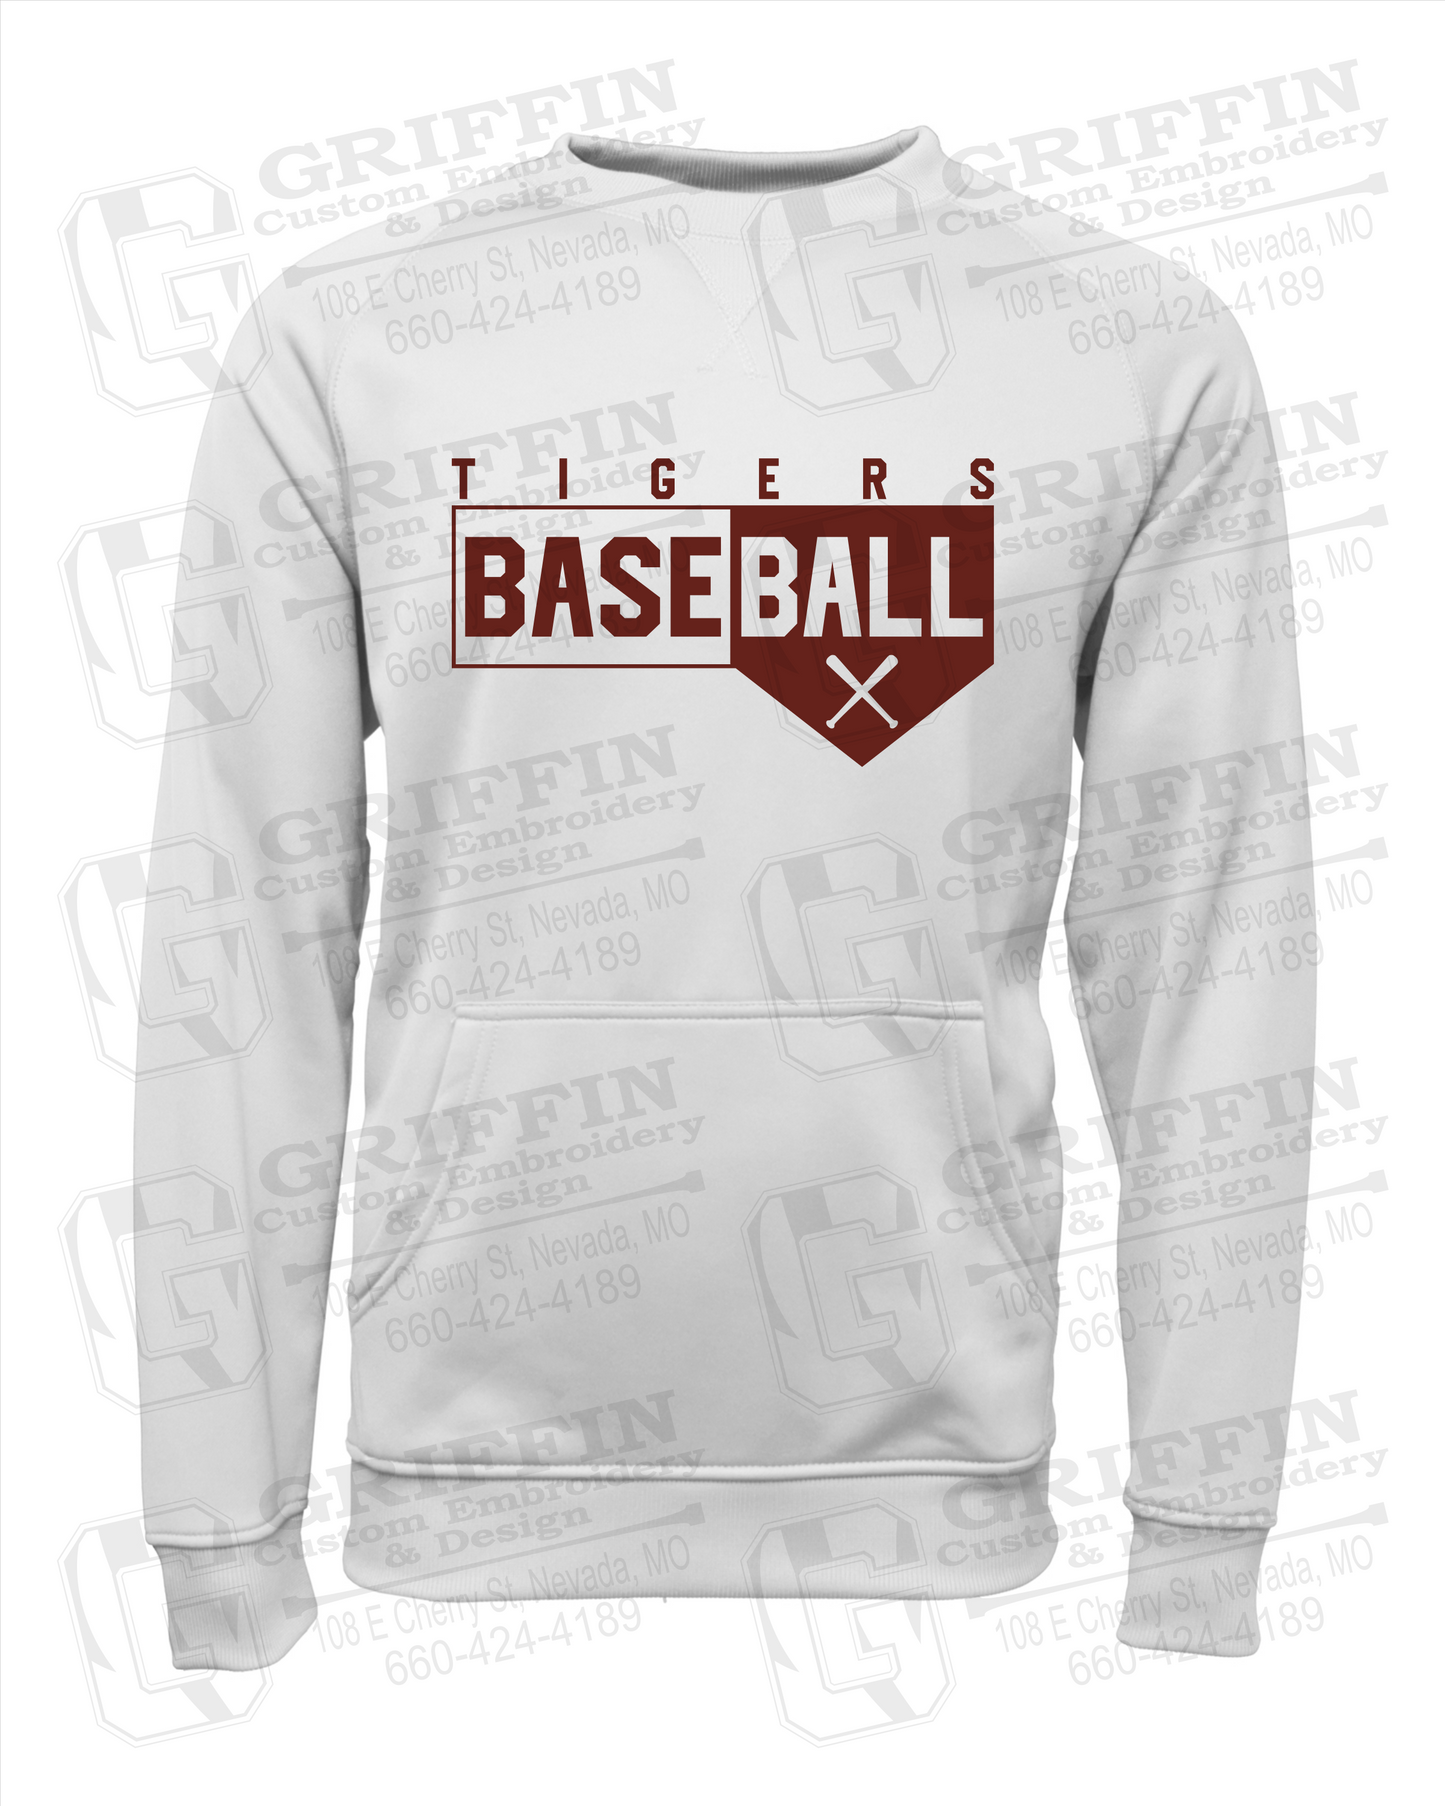 Nevada Tigers 24-X Youth Sweatshirt - Baseball